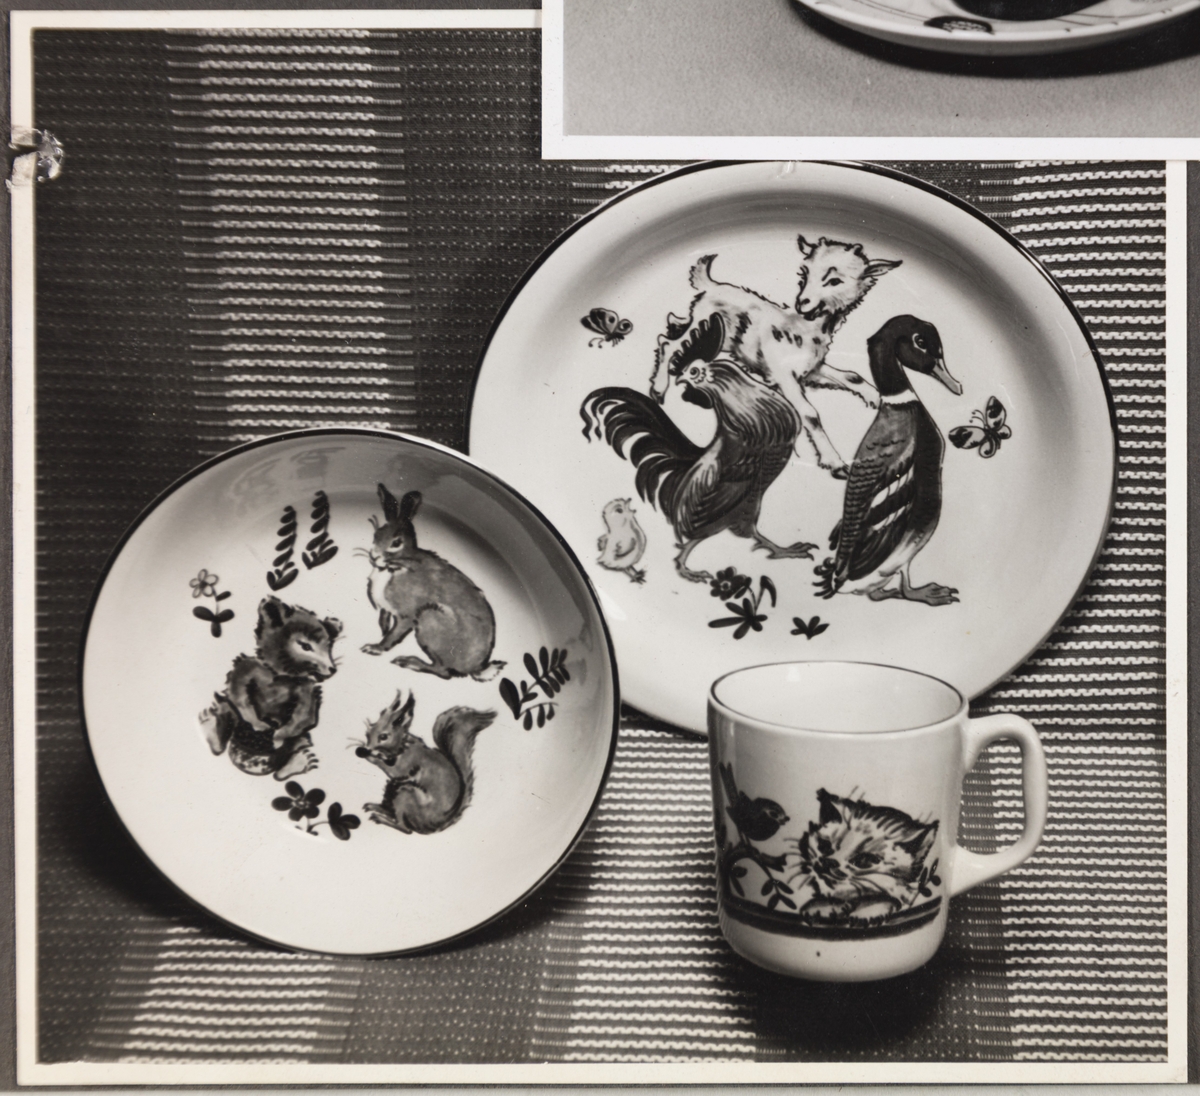 Barneserviset "Fauna" fra Stavangerflint A/S. Avbildet sett viser en tallerken, skål og kopp med ulike dyremotiv.